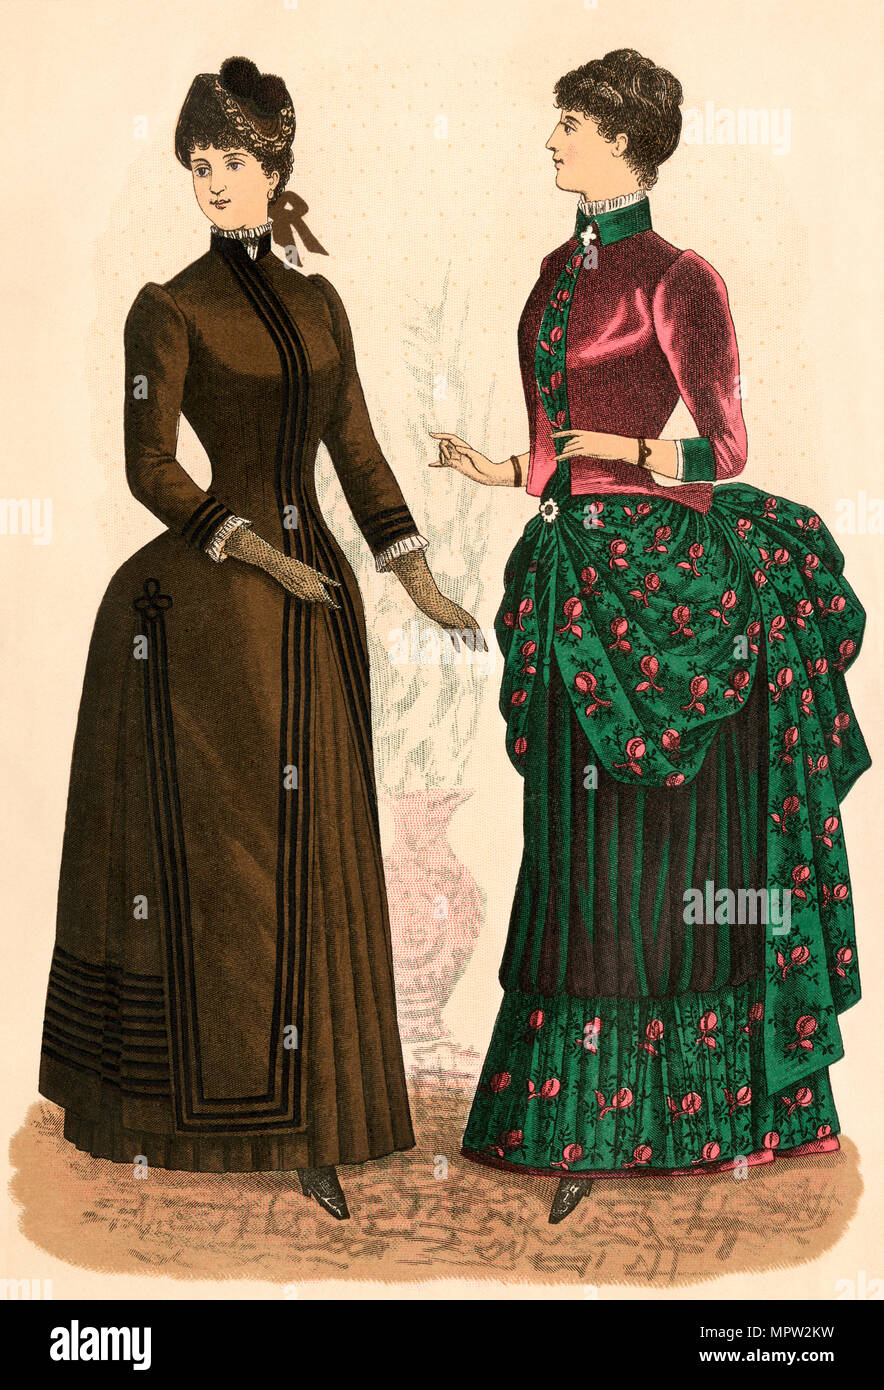 Godey's ladies fashions, 1880. Litografia a colori Foto Stock